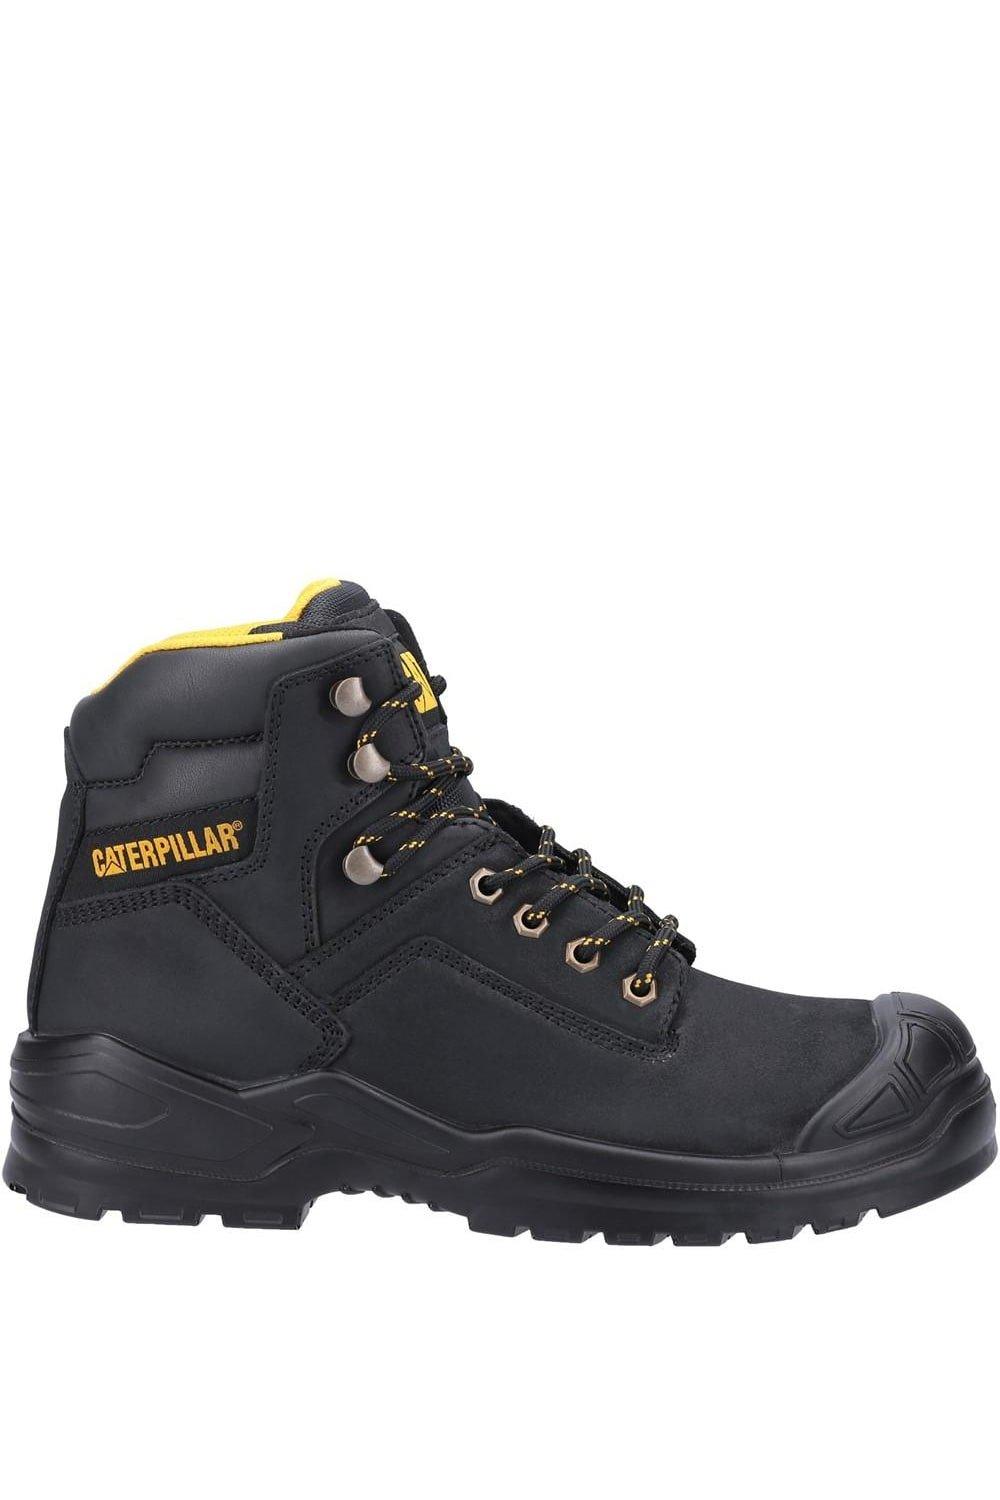 Кожаные защитные ботинки Striver Mid S3 Caterpillar, черный фото